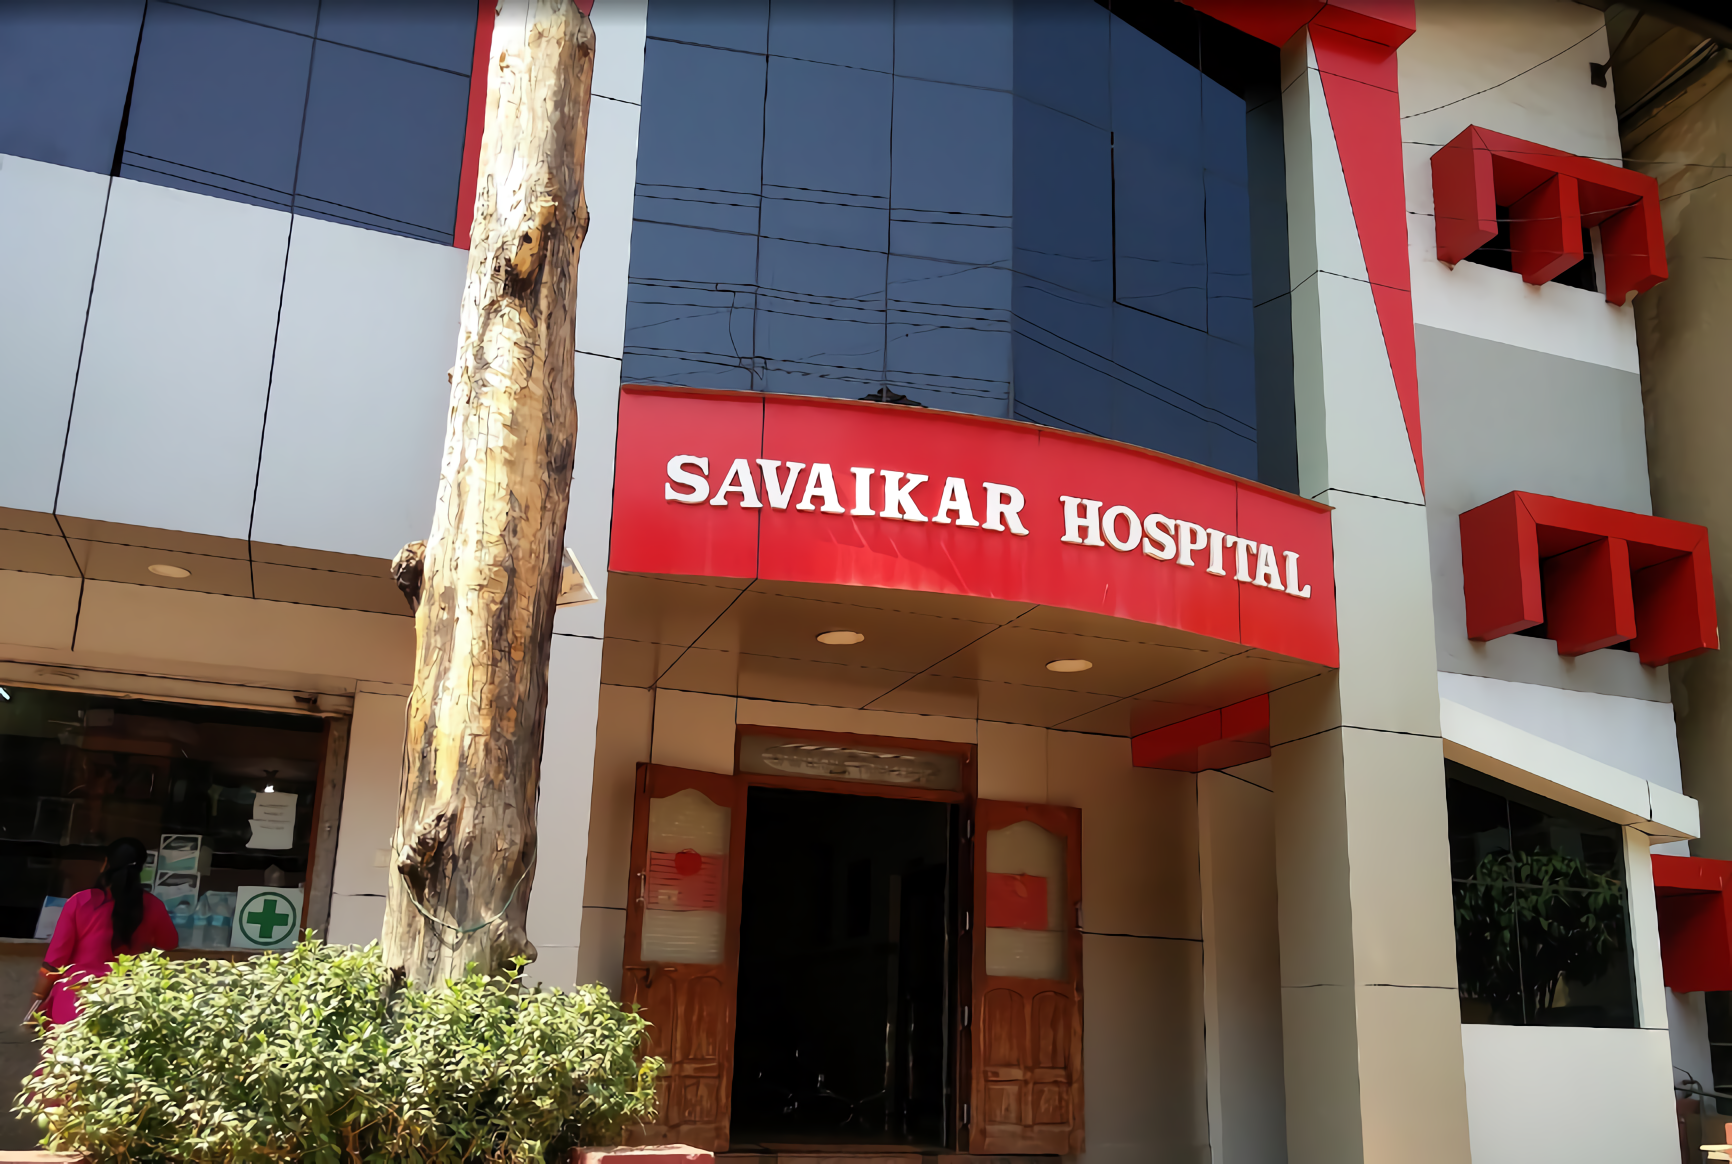 Savaikar Hospital